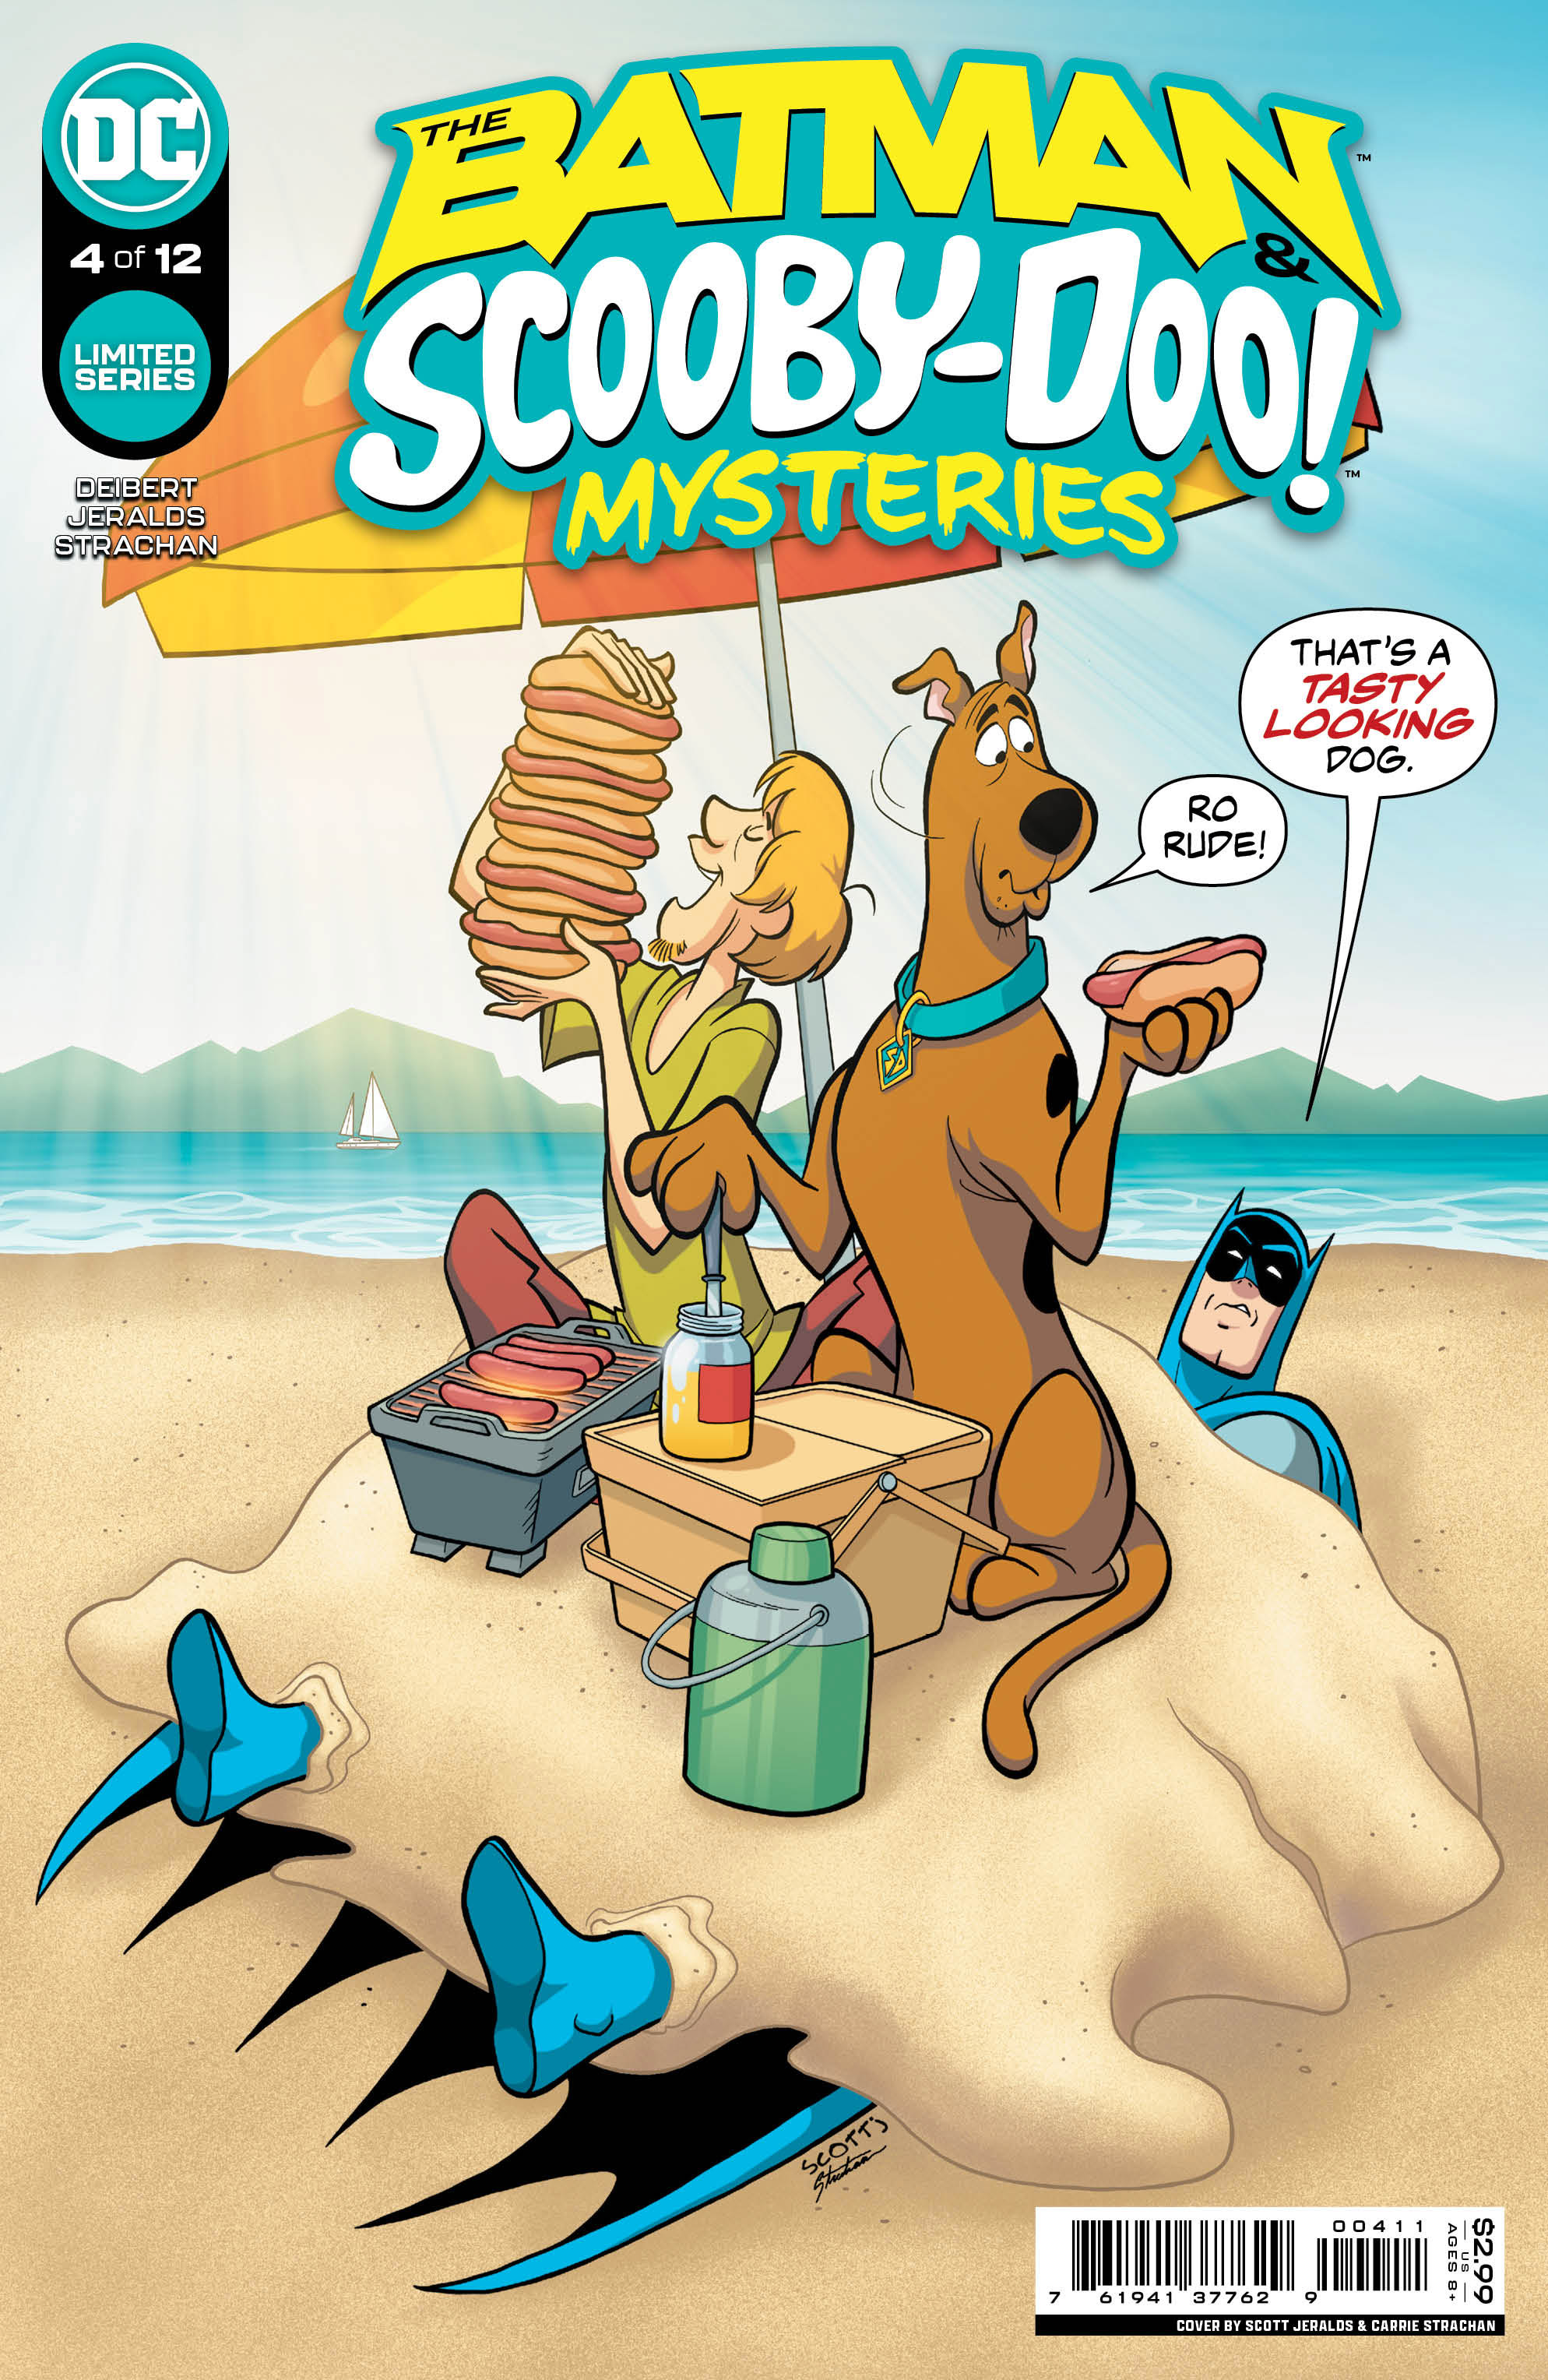 Batman & Scooby-Doo Mysteries #4